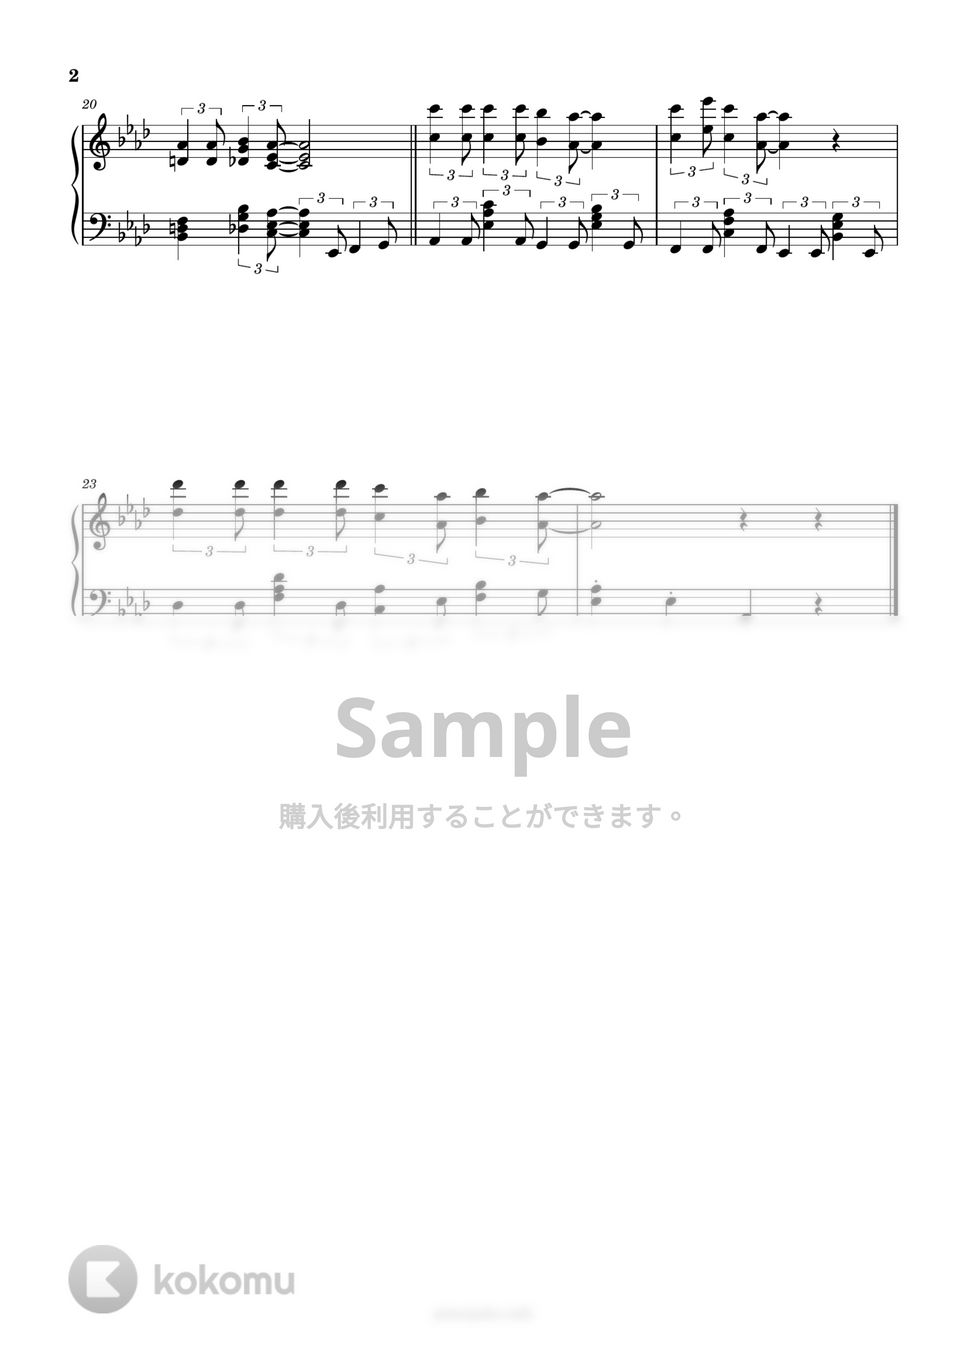 オー・シャンゼリゼ by ピアノ塾